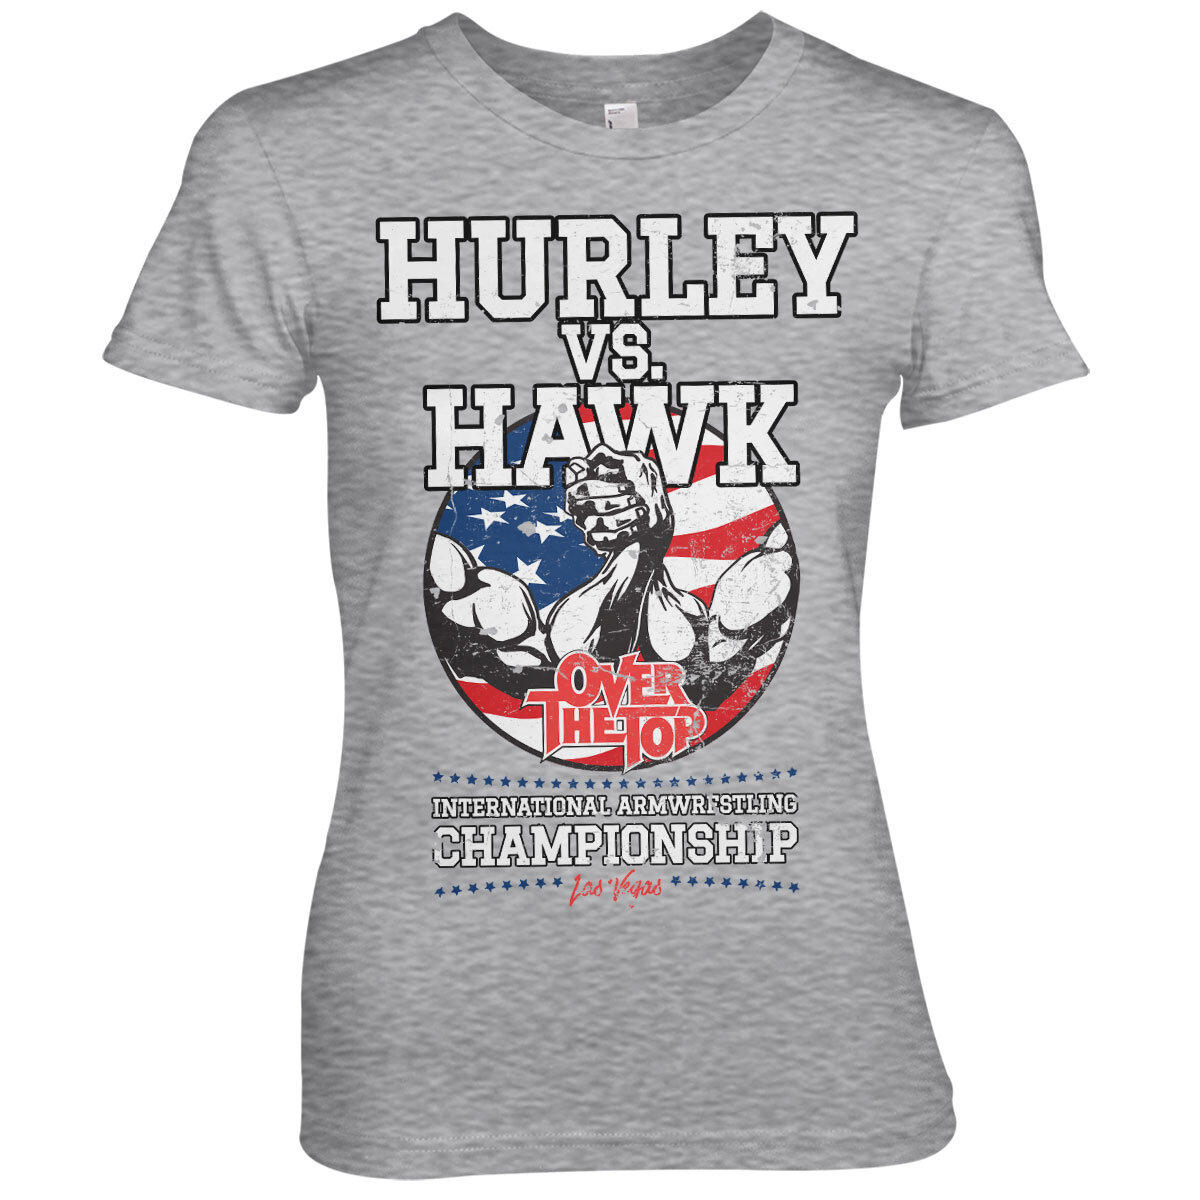 Hurley Vs. Hawk Girly Tee